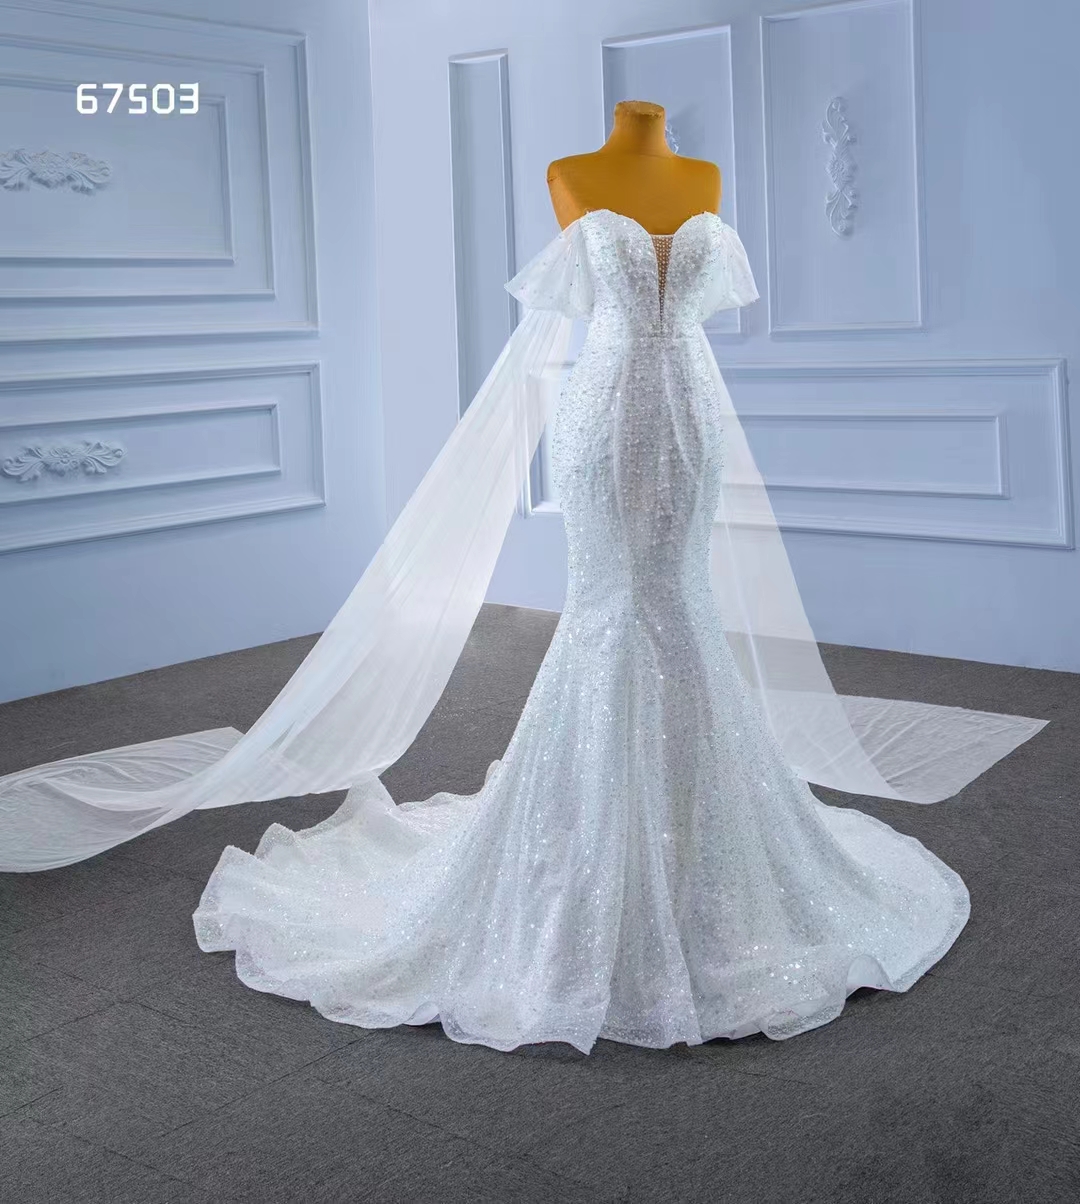 Meerjungfrau-Hochzeitskleid, Kristall-Pailletten, sexy, schulterfrei, SM67503